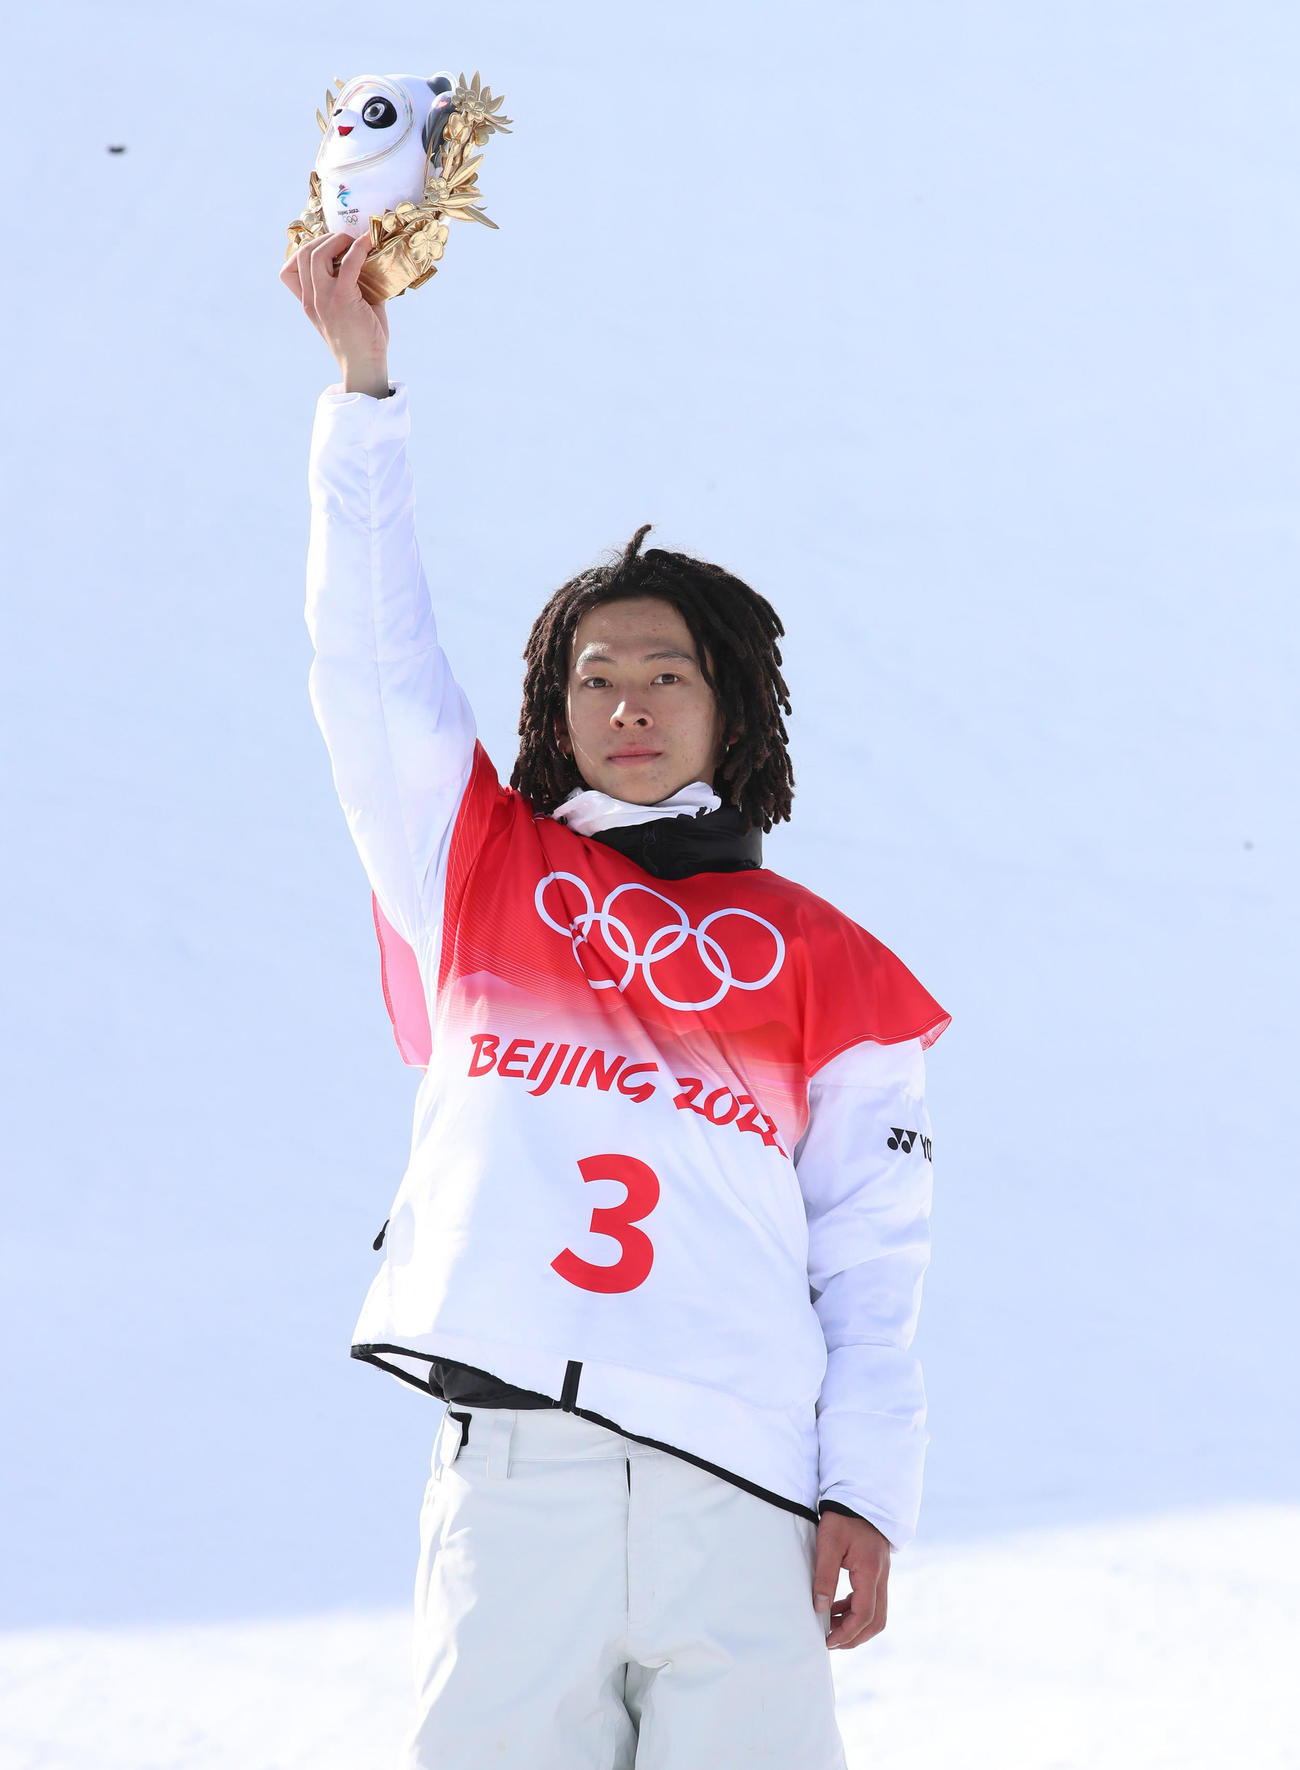 スノーボード男子ハーフパイプで金メダルを獲得した平野歩は表彰台で公式マスコット「ビンドゥンドゥン」を掲げる（撮影・パオロ　ヌッチ）